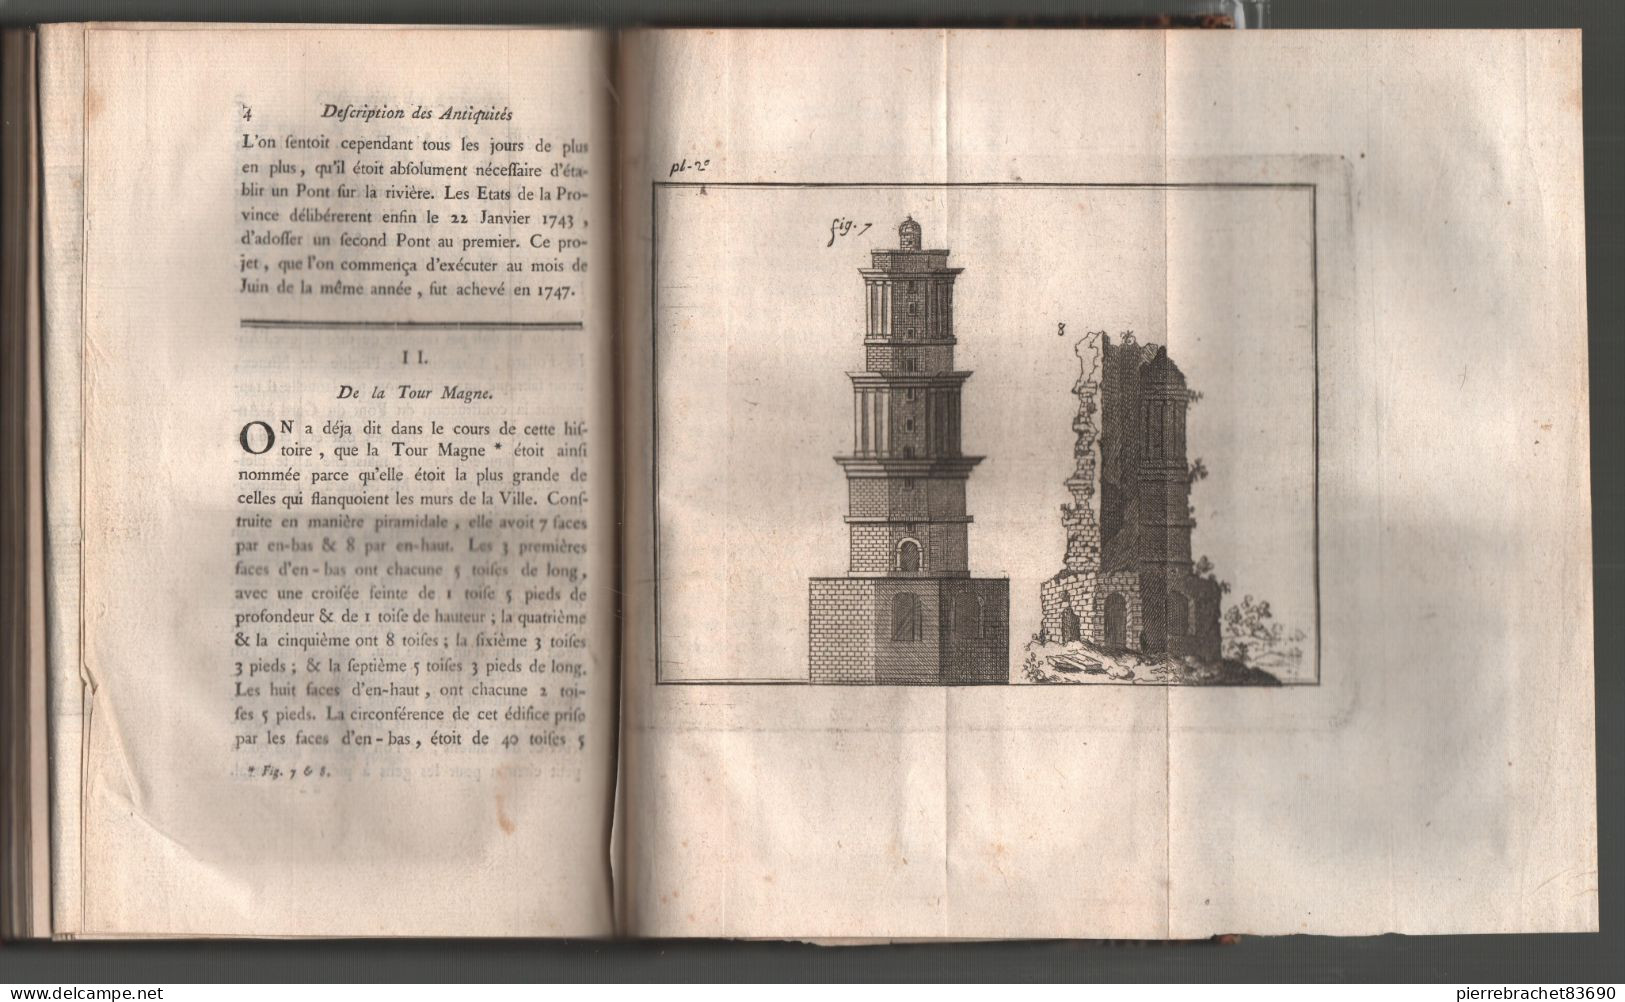 Maucomble. Histoire Abrégée De La Ville De Nîmes Avec La Description De Ses Antiquités. 1767 - Zonder Classificatie